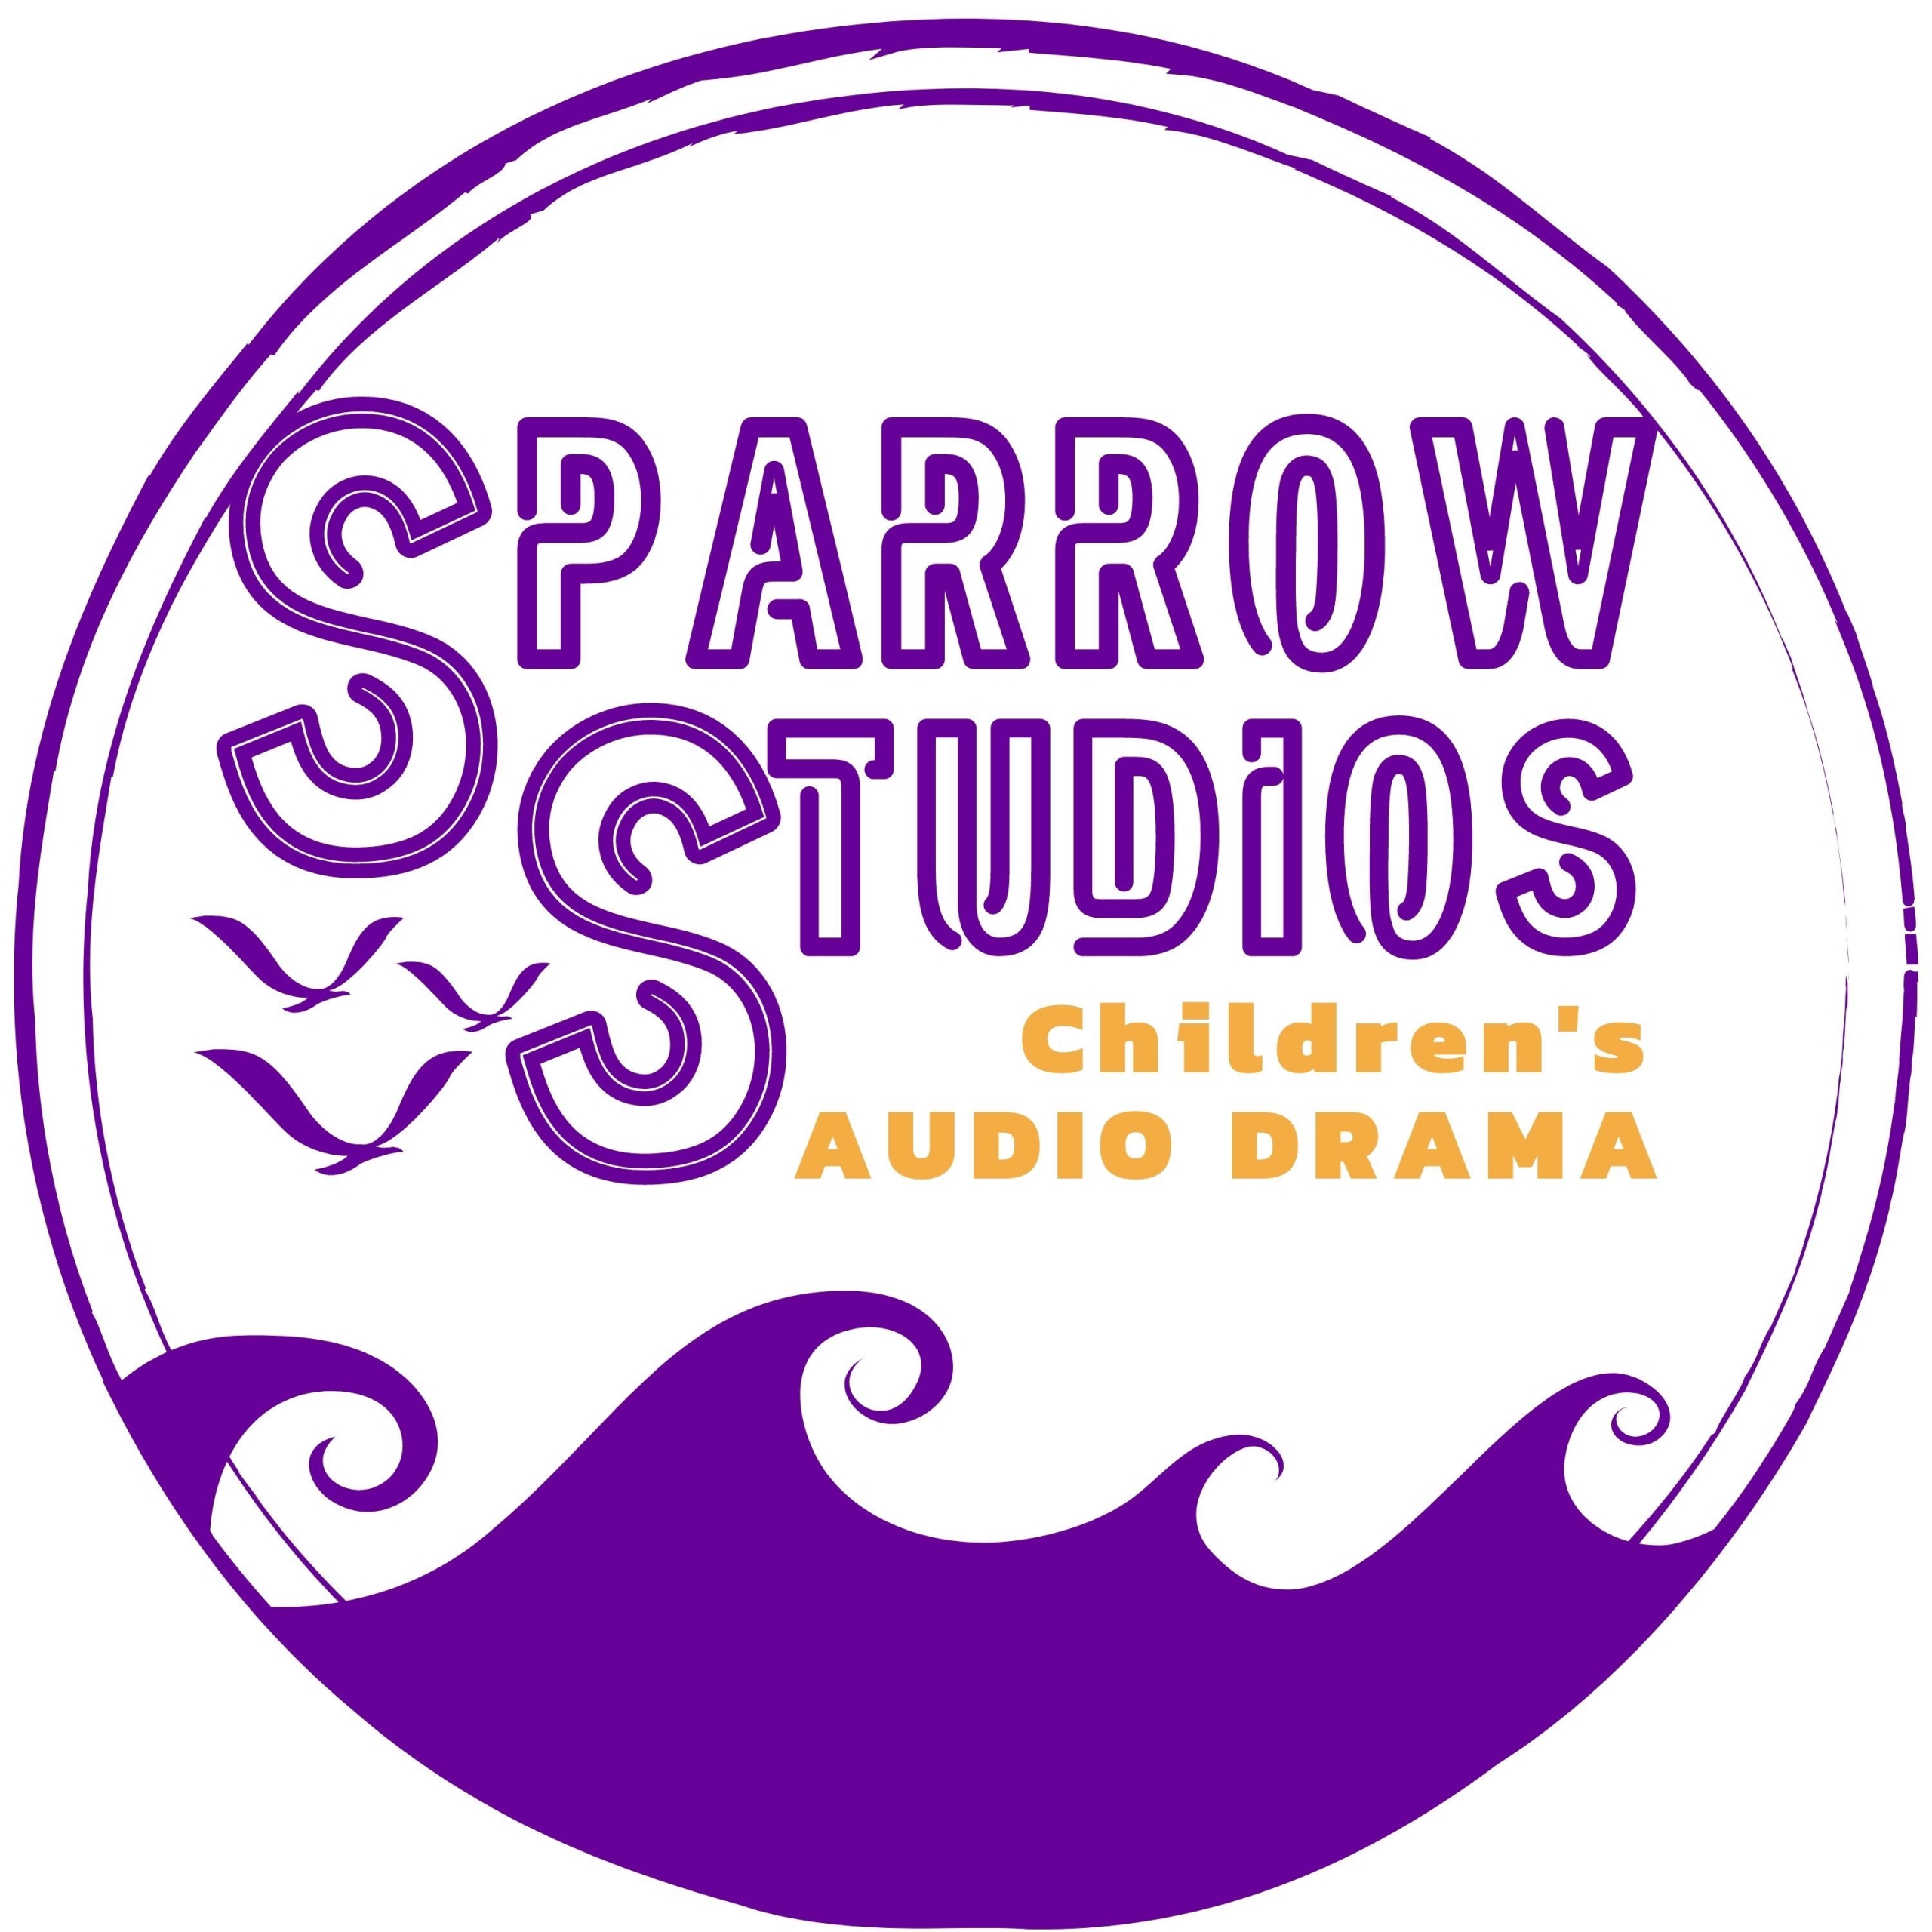 Sparrow Studios Children's Audio Drama